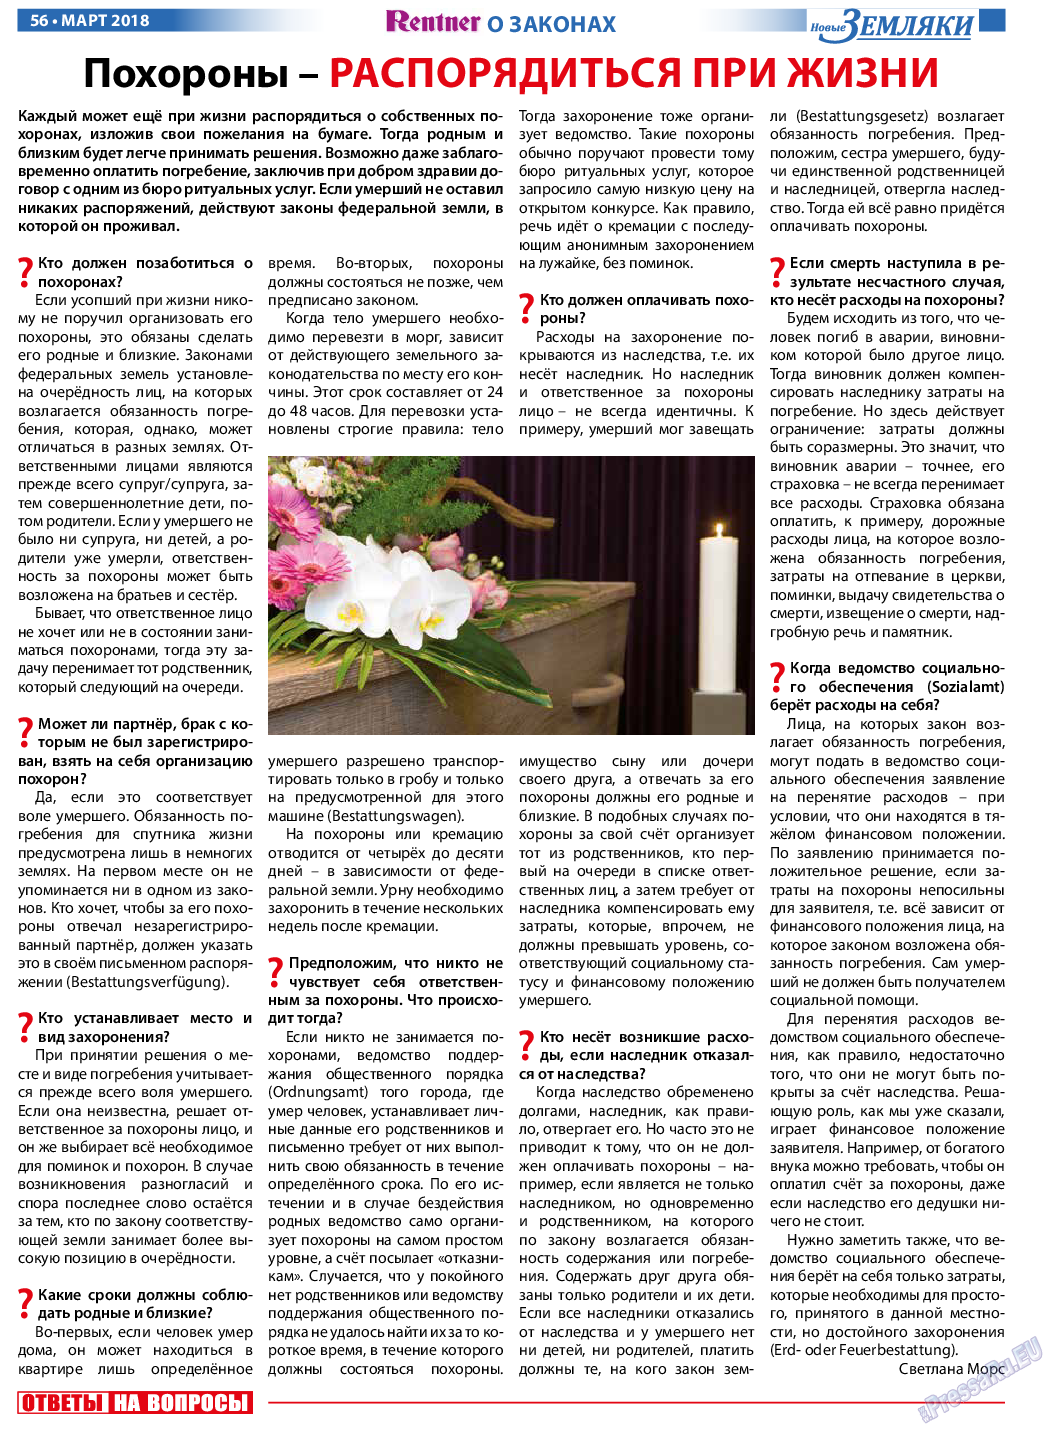 Новые Земляки (газета). 2018 год, номер 3, стр. 56